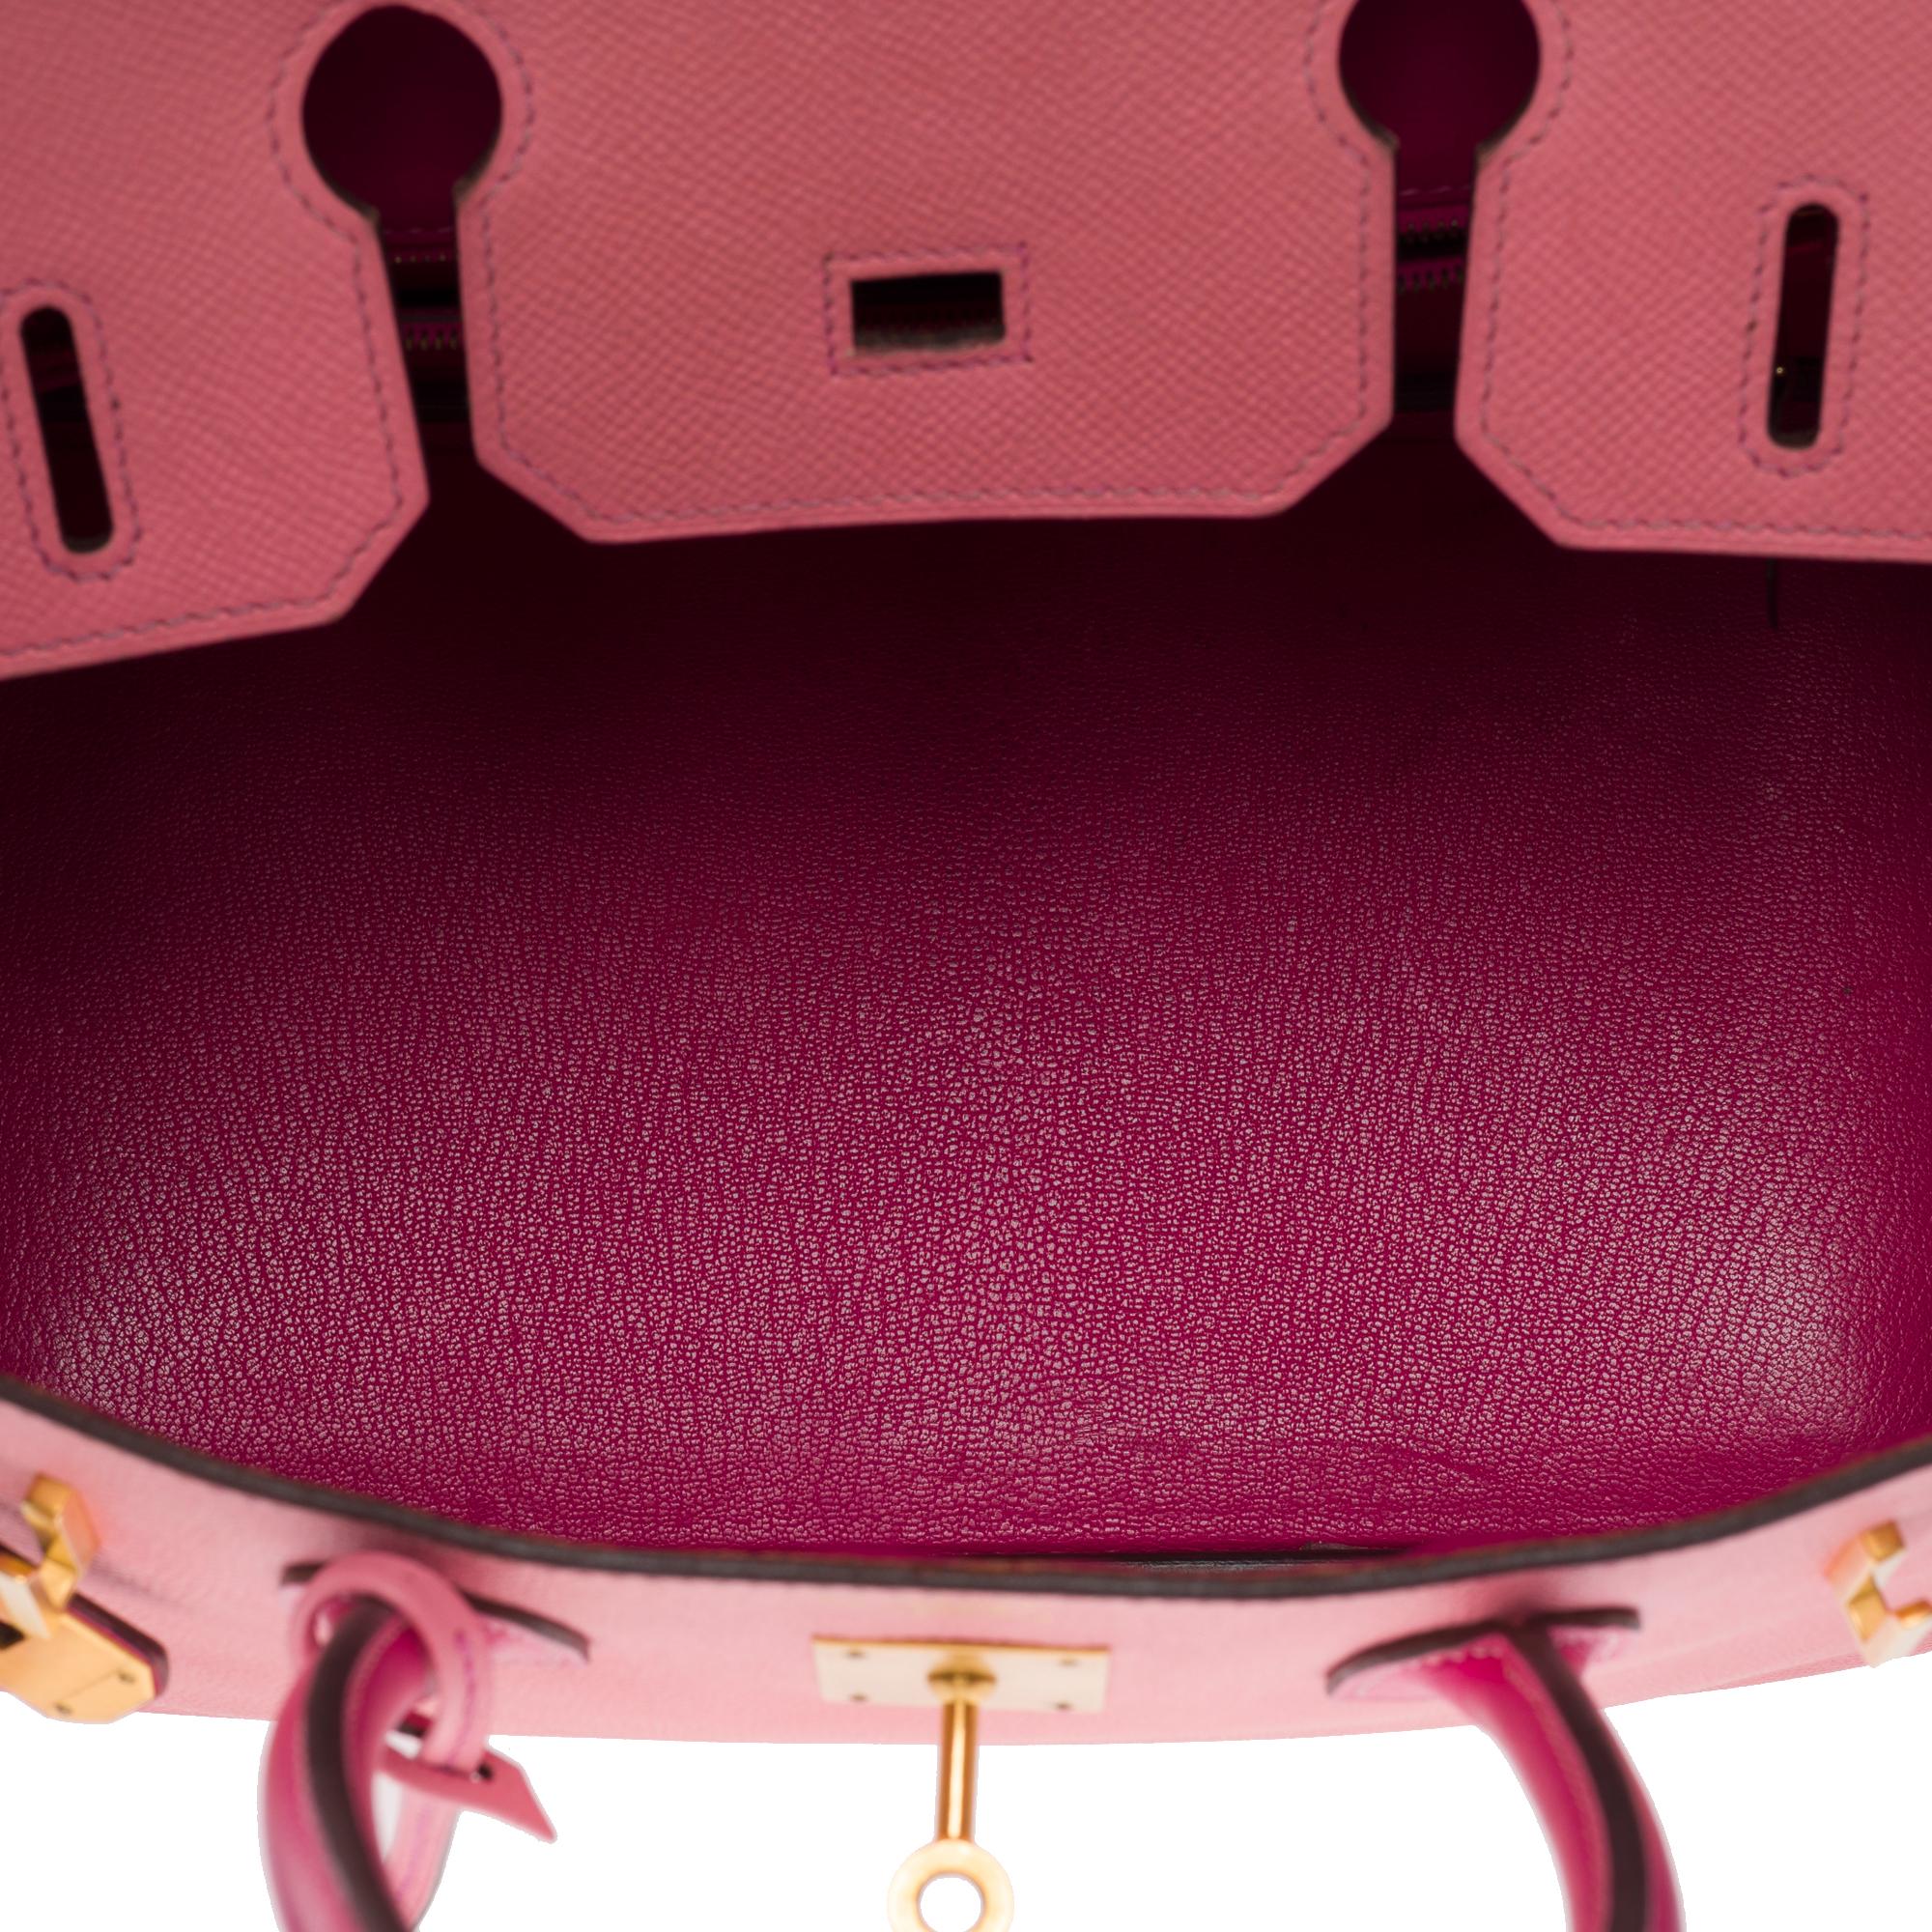  Rare Hermès Birkin 30 HSS Special Order handbag in Pink Epsom leather, BGHW For Sale 4